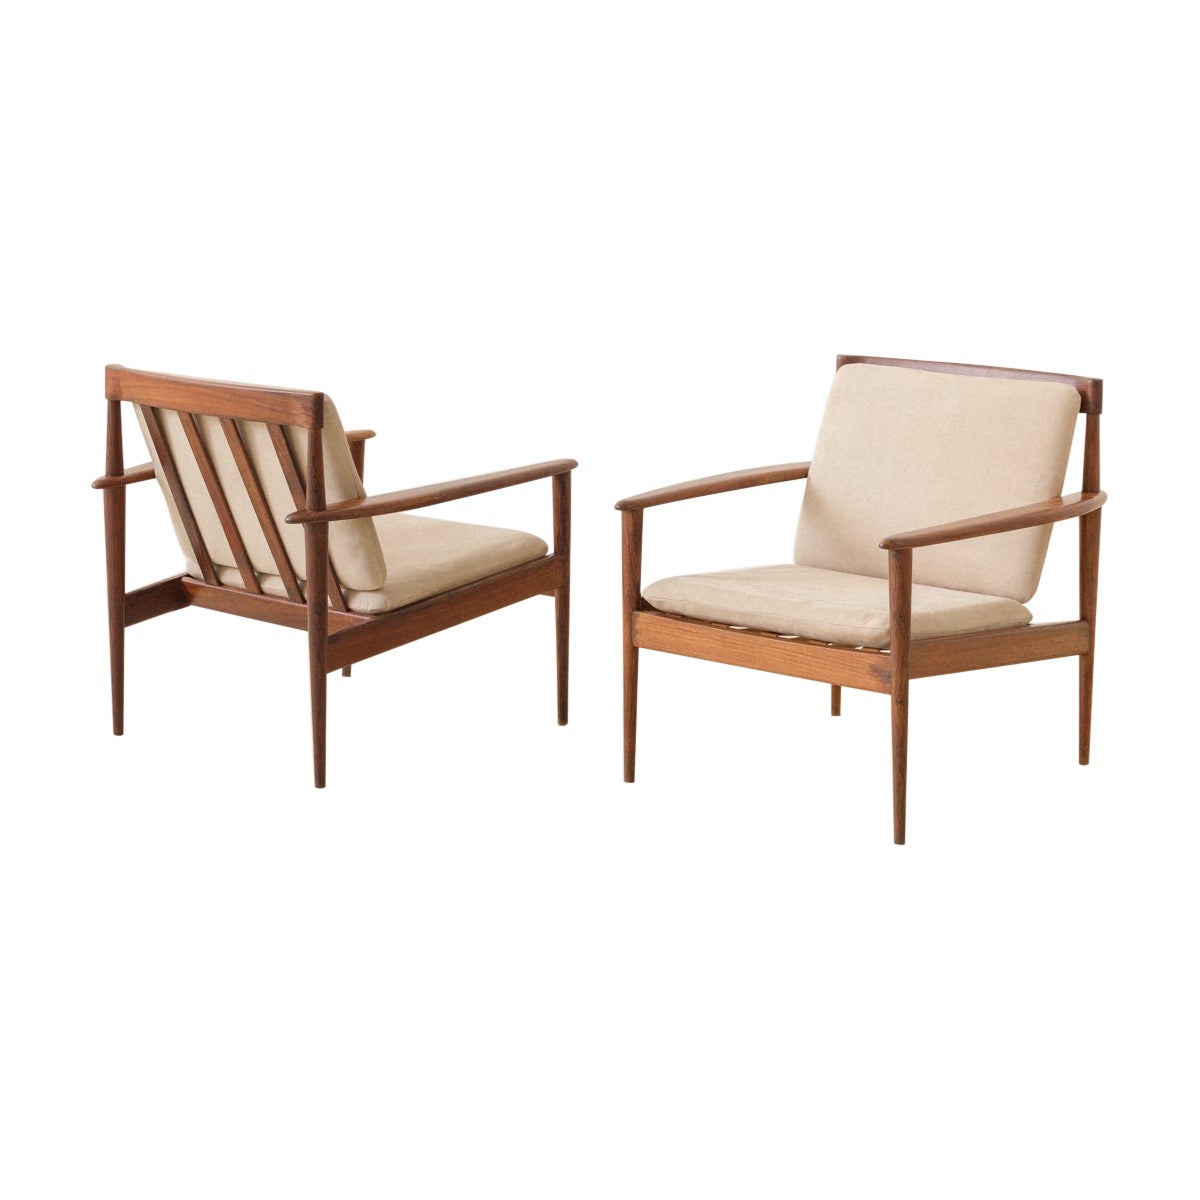 Paire de fauteuils de Grete Jalk/Rino Levi, vers 1951, design brésilien du milieu du siècle dernier